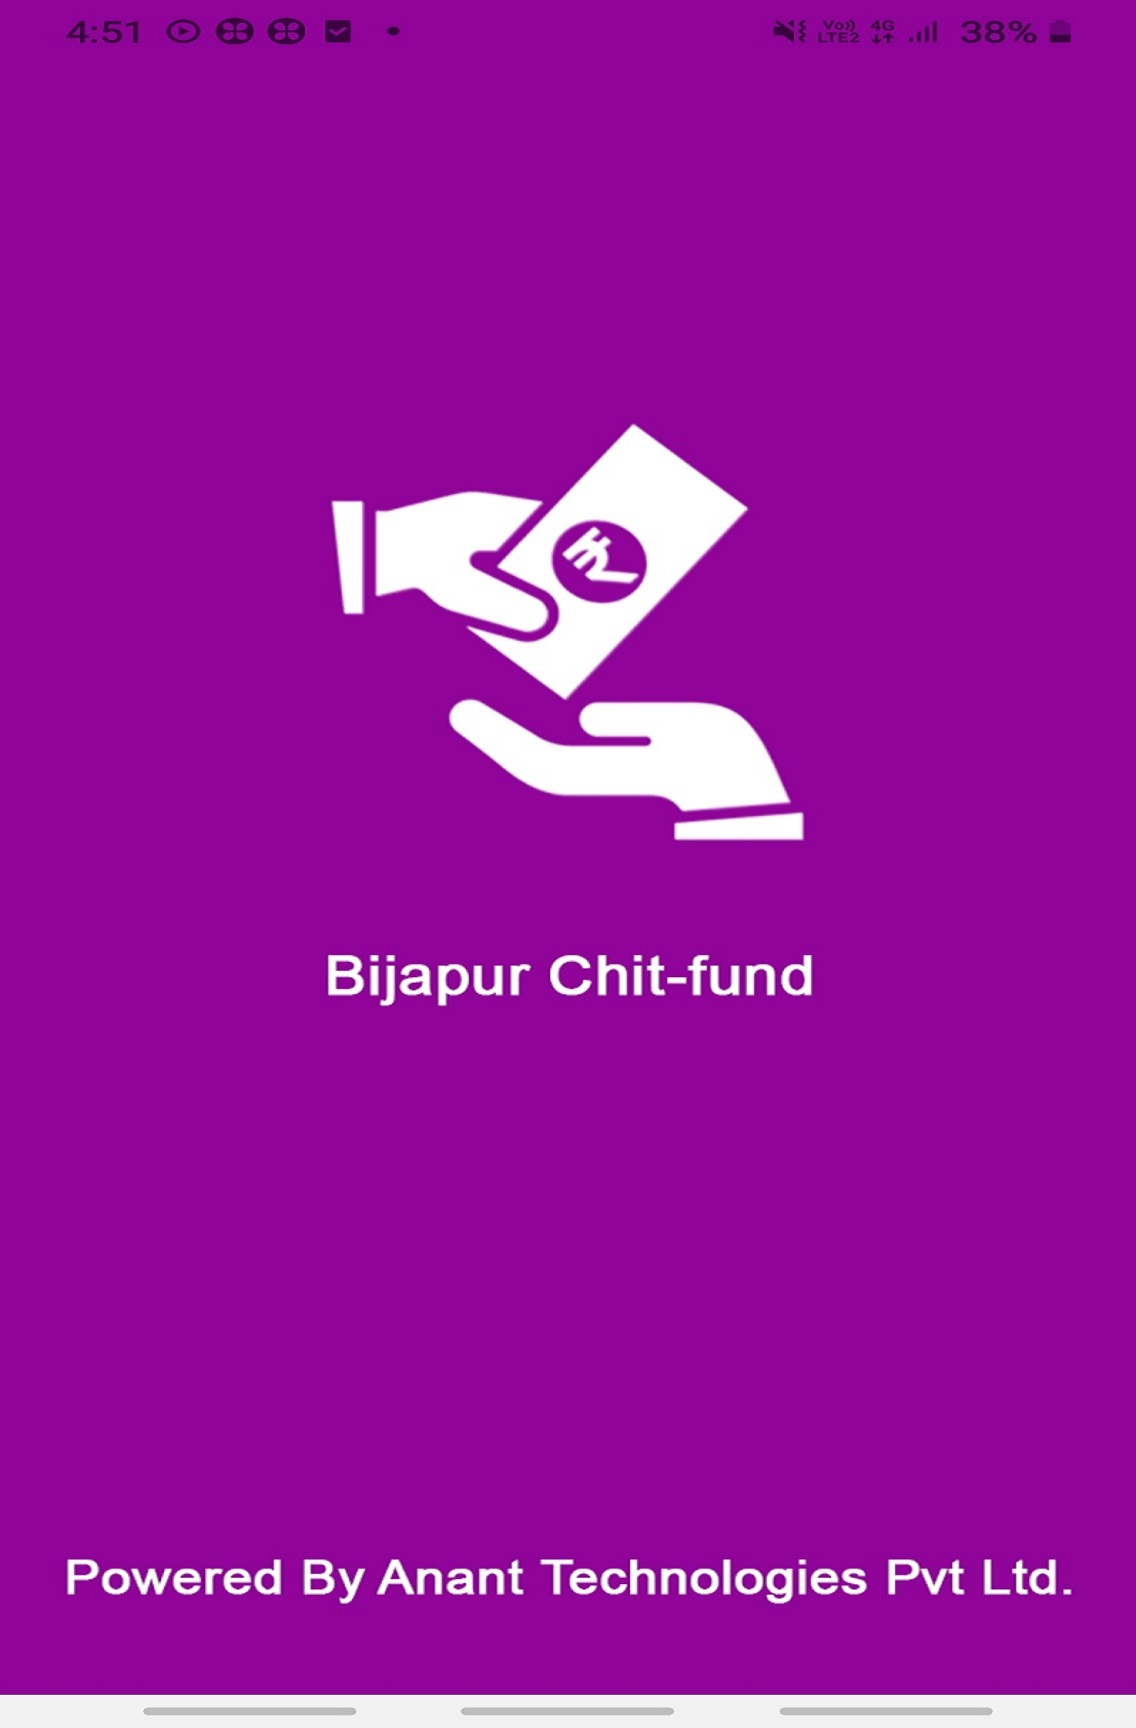 Bijapur Chit-Fund